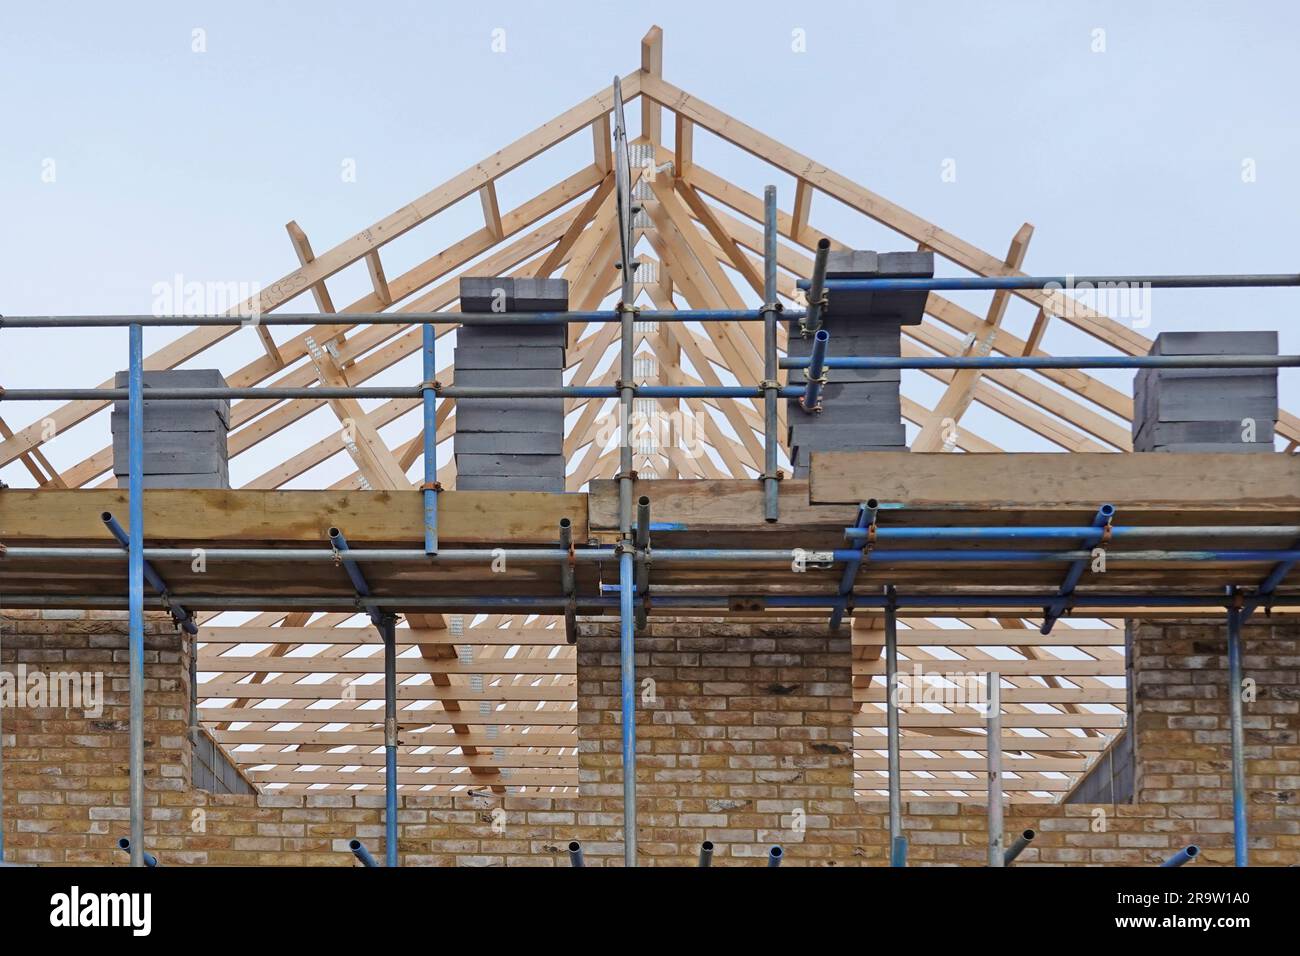 Fermes de toit en bois préfabriquées en usine sur le chantier de construction de maison détachée en position échafaudage chargé blocs pignon mur d'extrémité Angleterre Royaume-Uni Banque D'Images